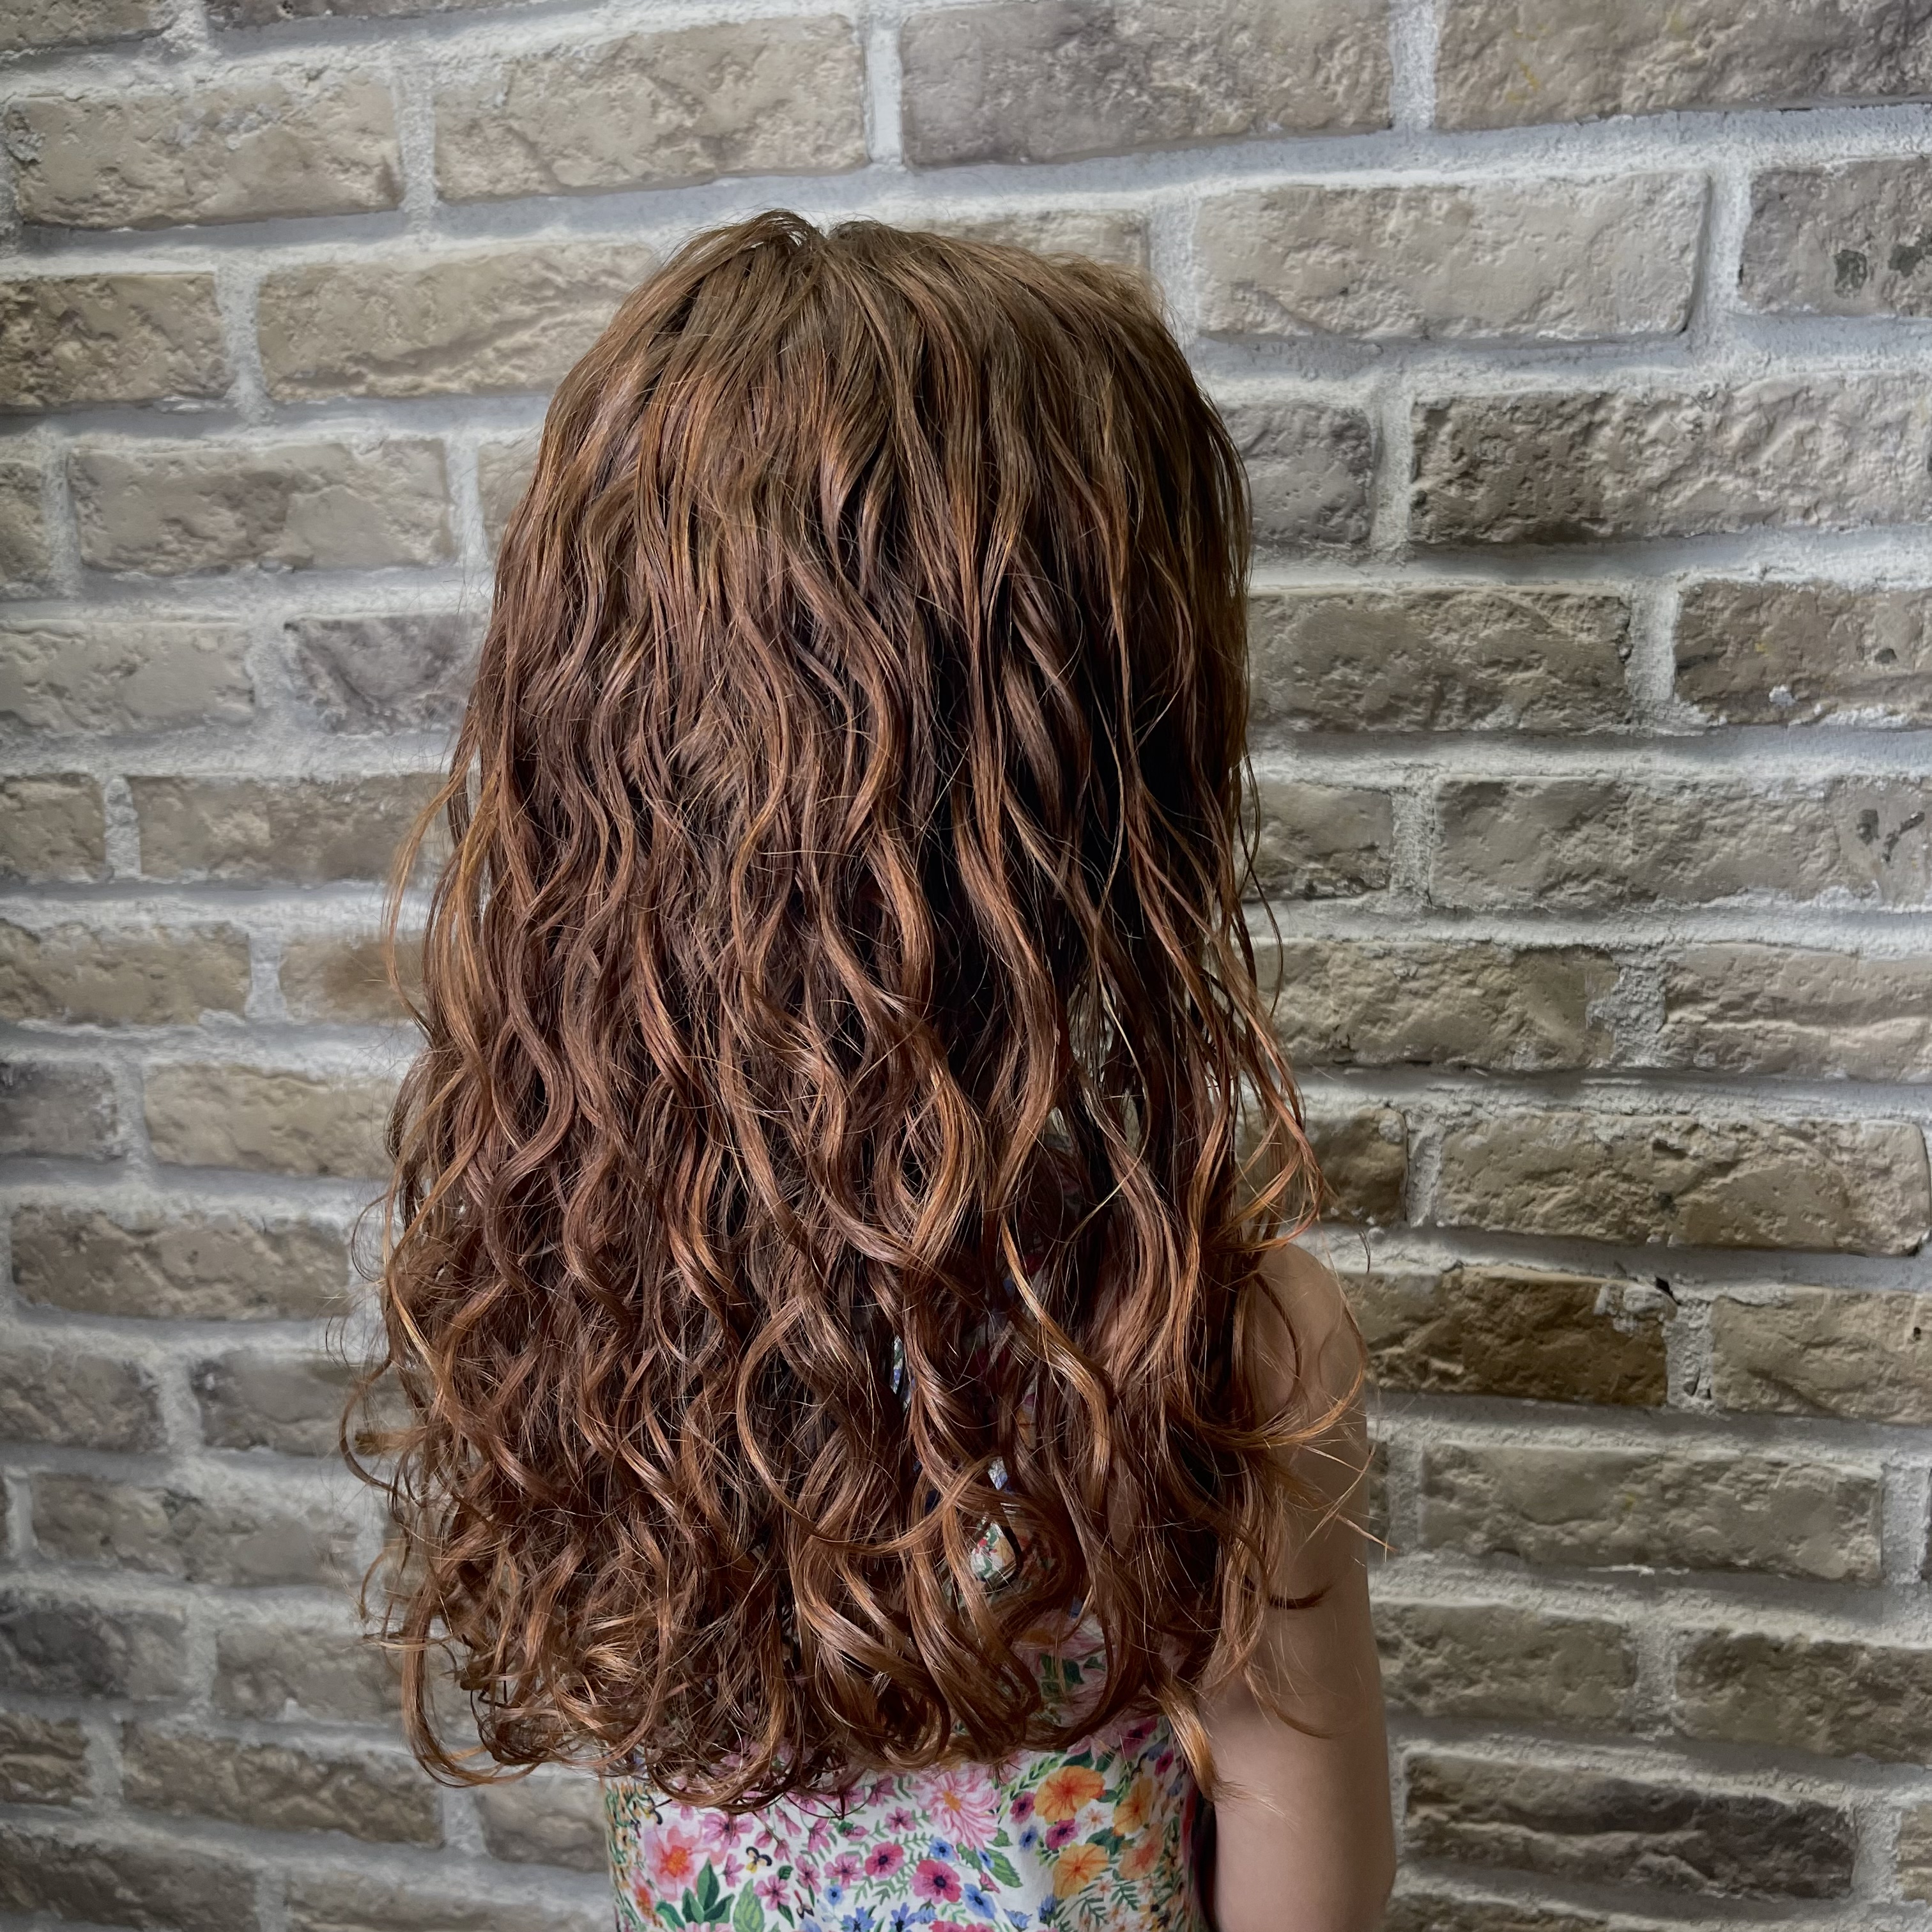 На детские волосы тоже можно делать биозавивку. Если правильно подобрать составы, волосы останутся в прежнем состоянии и качество волос не испортиться.